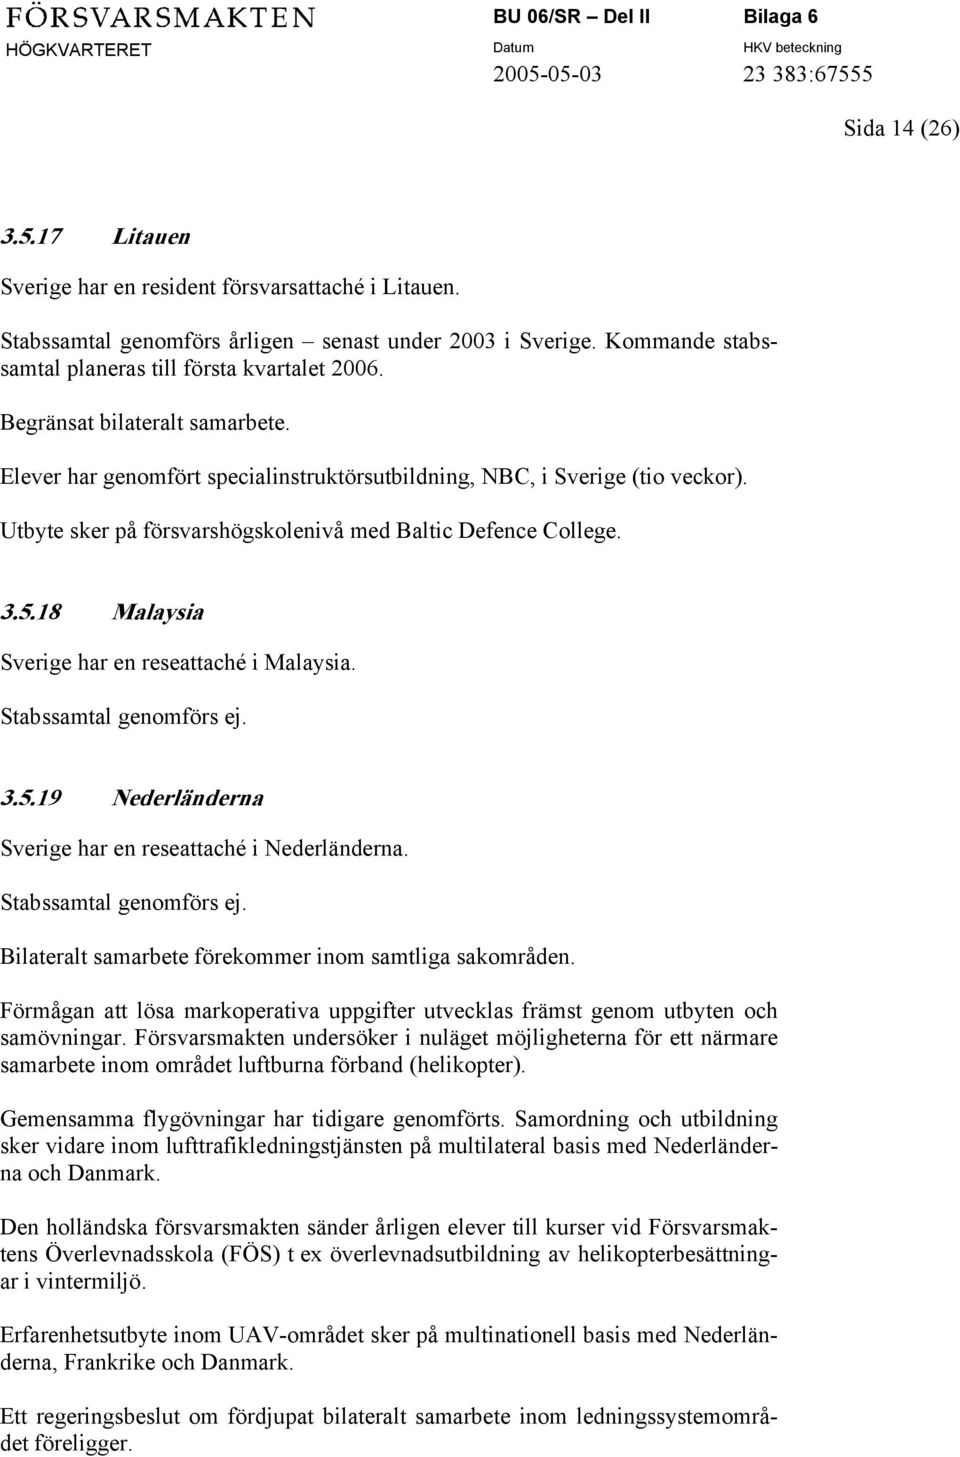 18 Malaysia Sverige har en reseattaché i Malaysia. 3.5.19 Nederländerna Sverige har en reseattaché i Nederländerna. Bilateralt samarbete förekommer inom samtliga sakområden.